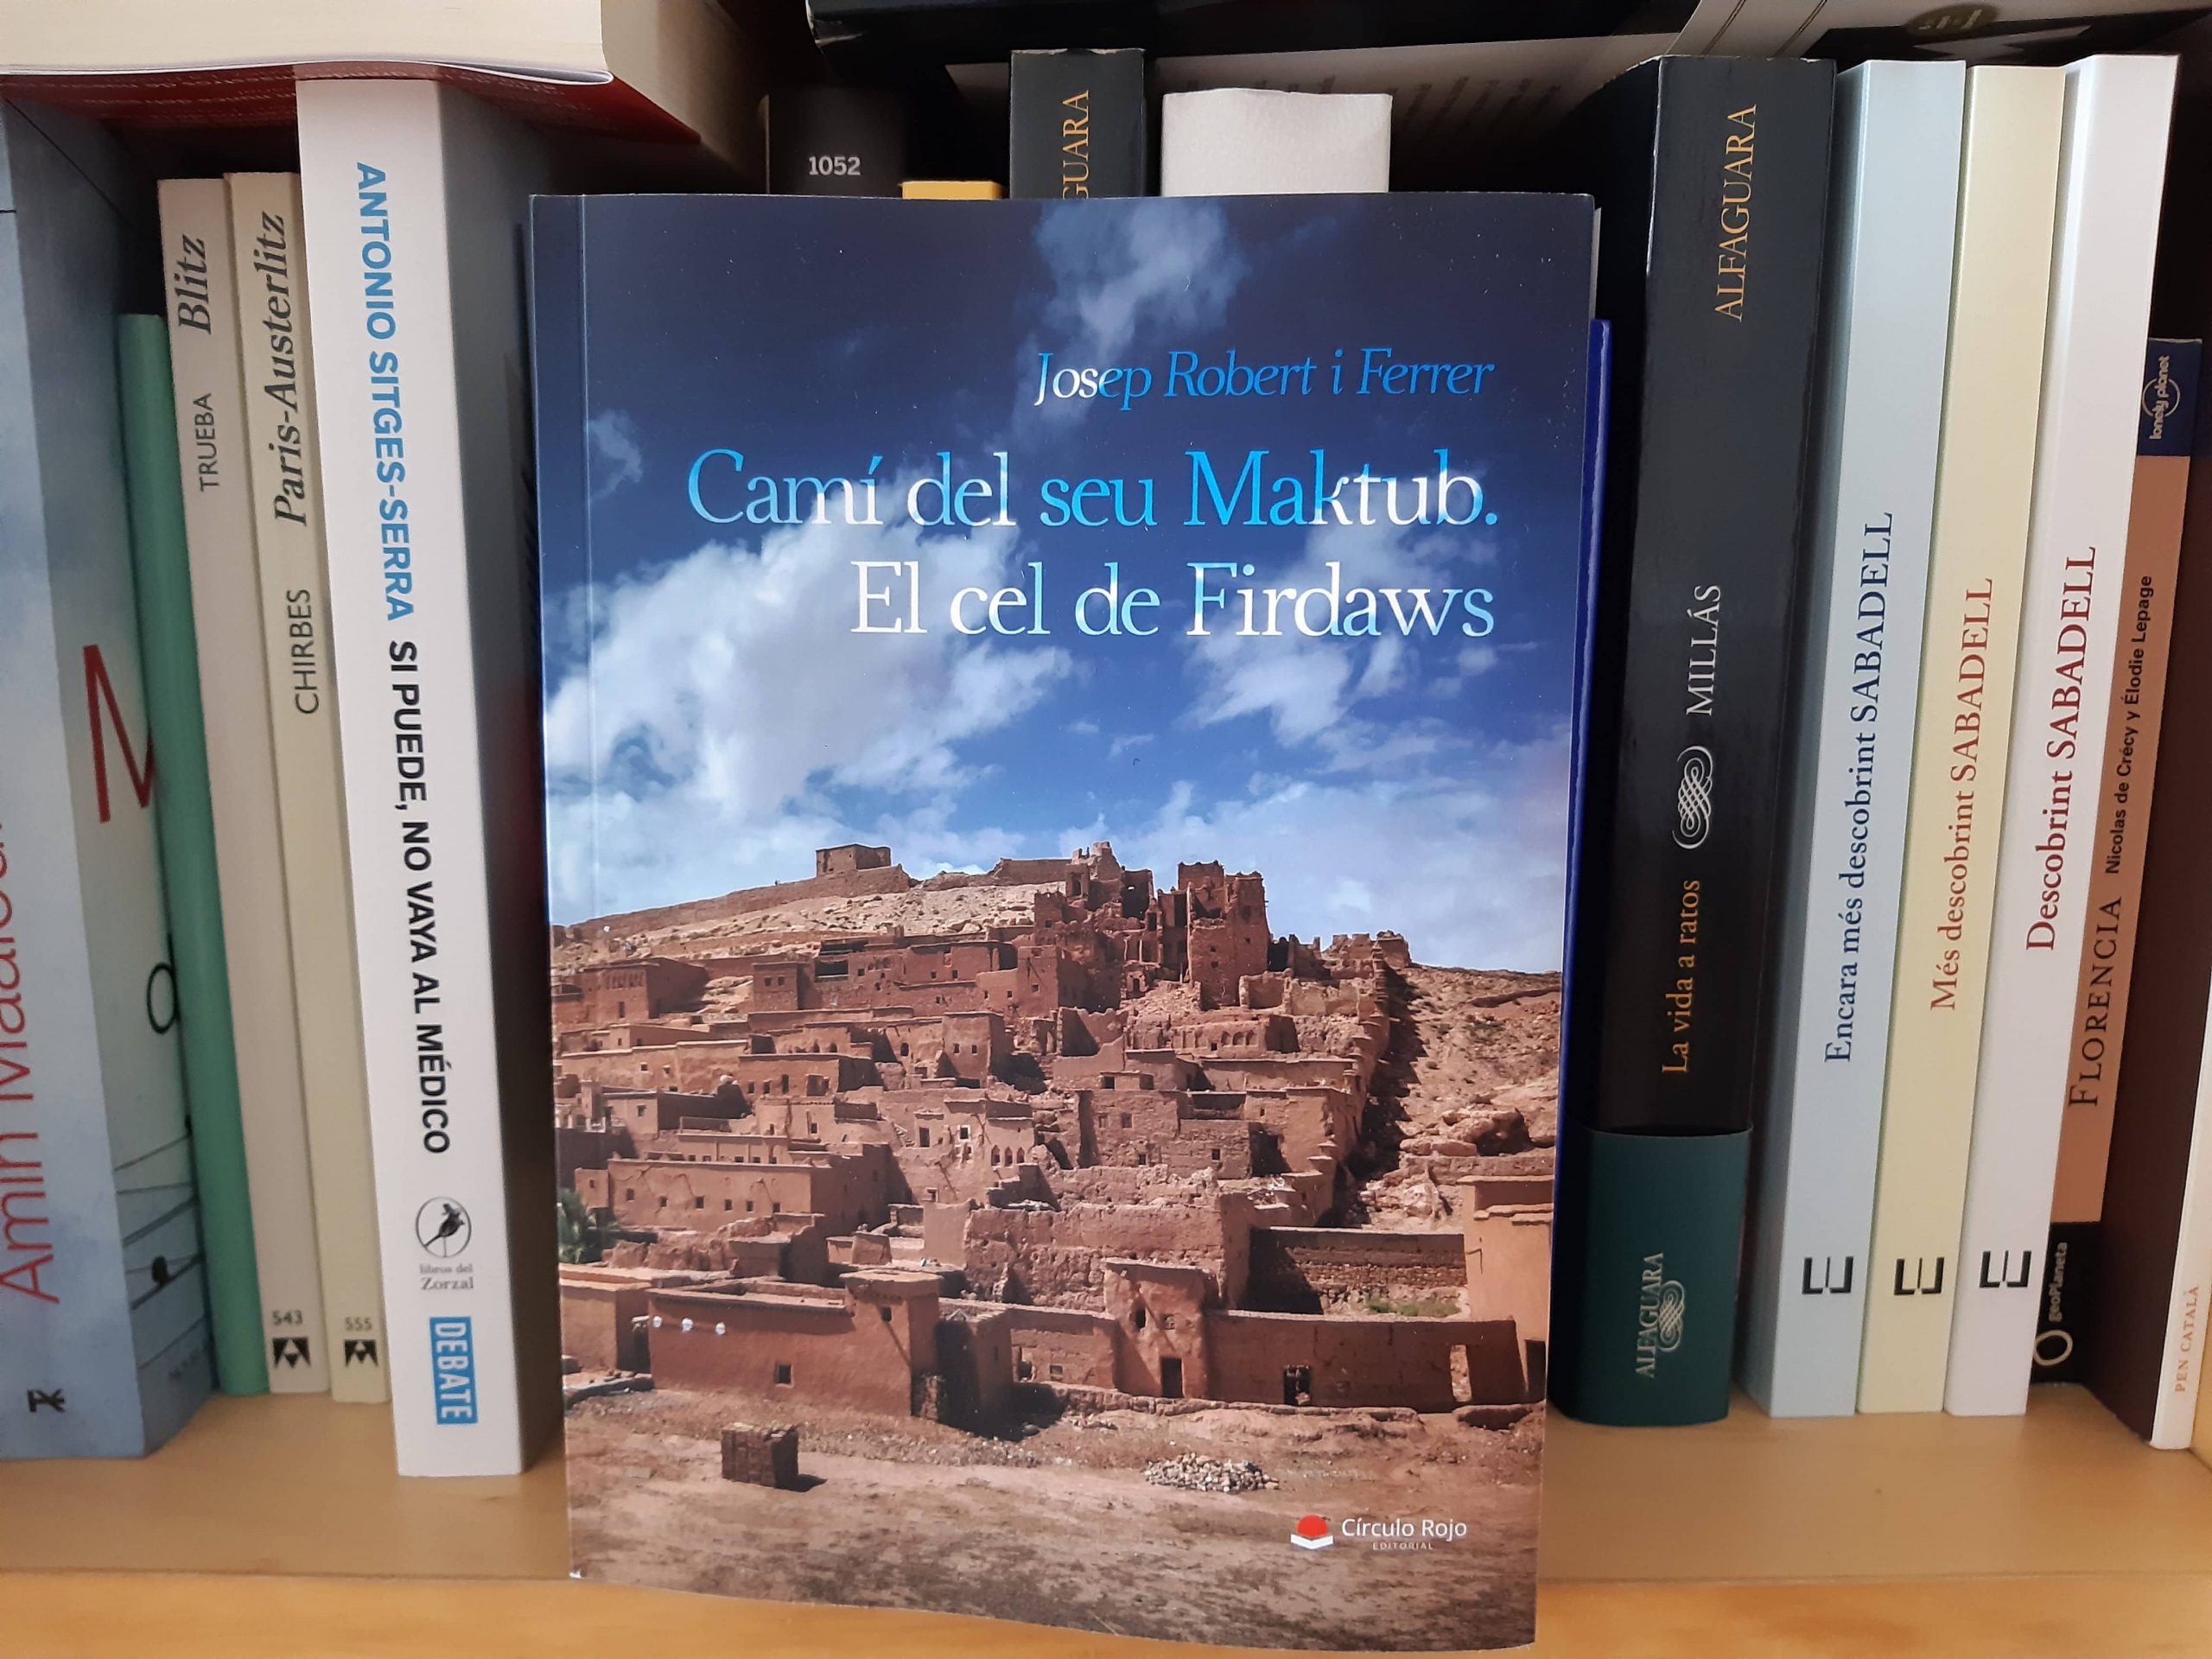 Josep Robert Ferrer, nos presenta su primera novela “Camí del seu Maktub. El cel de Firdaws”